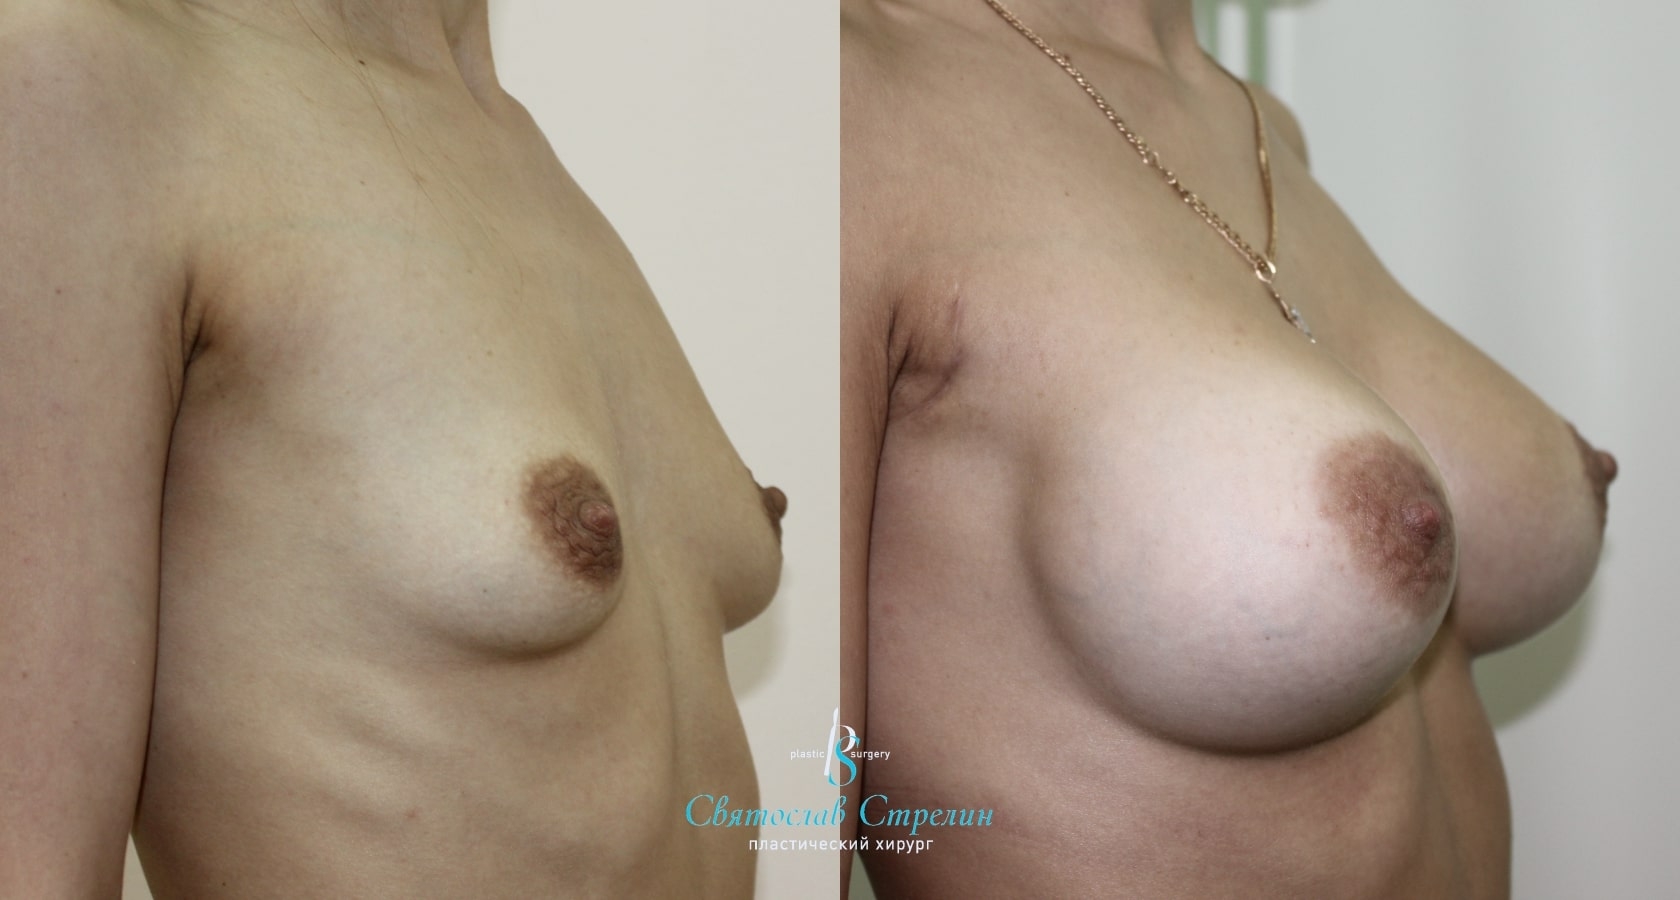 Увеличение груди, 8 месяцев после операции, импланты Себбин 280 мл, анатомические, средняяв ысота, высокая проекция, доступ подмышечный